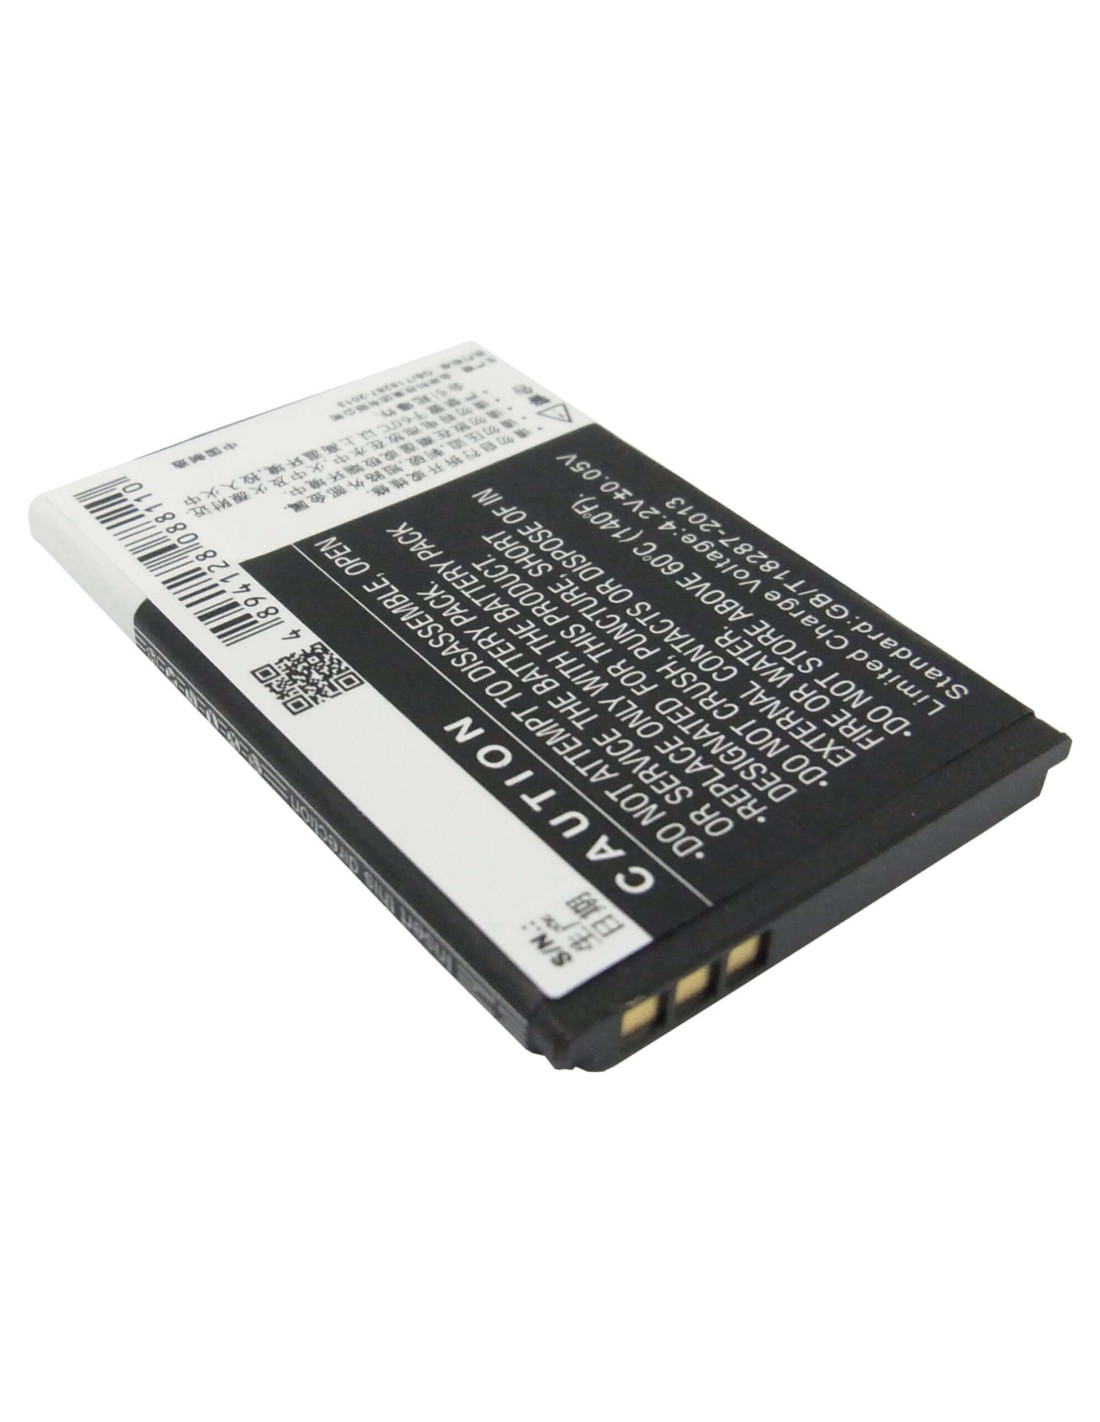 Battery for BBK i536 3.7V, 800mAh - 2.96Wh